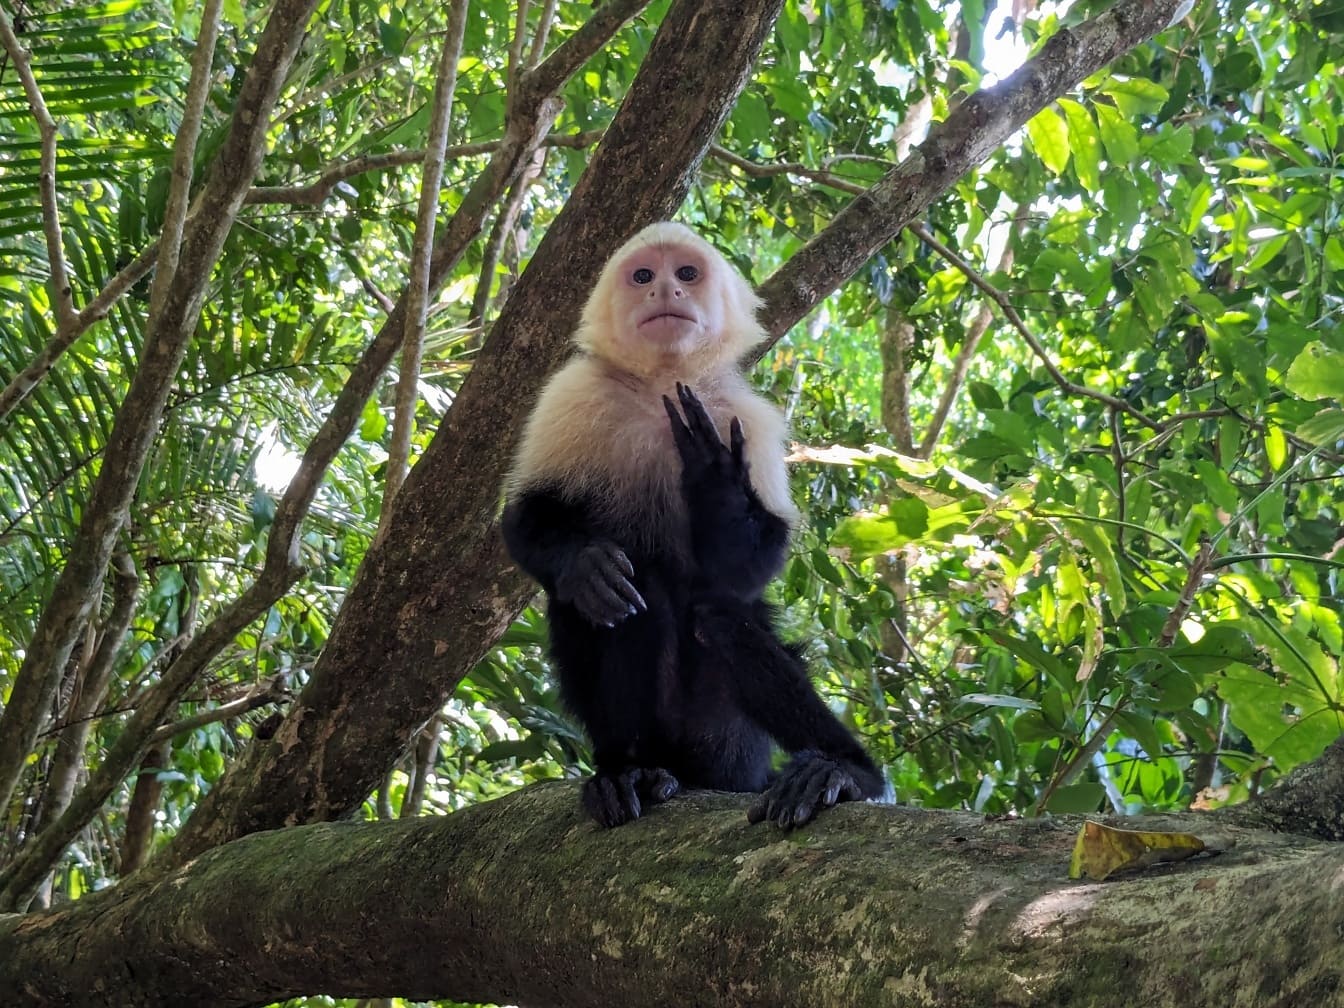 巴拿马白面卷尾猴 (Cebus imitator) 猴子坐在树枝上